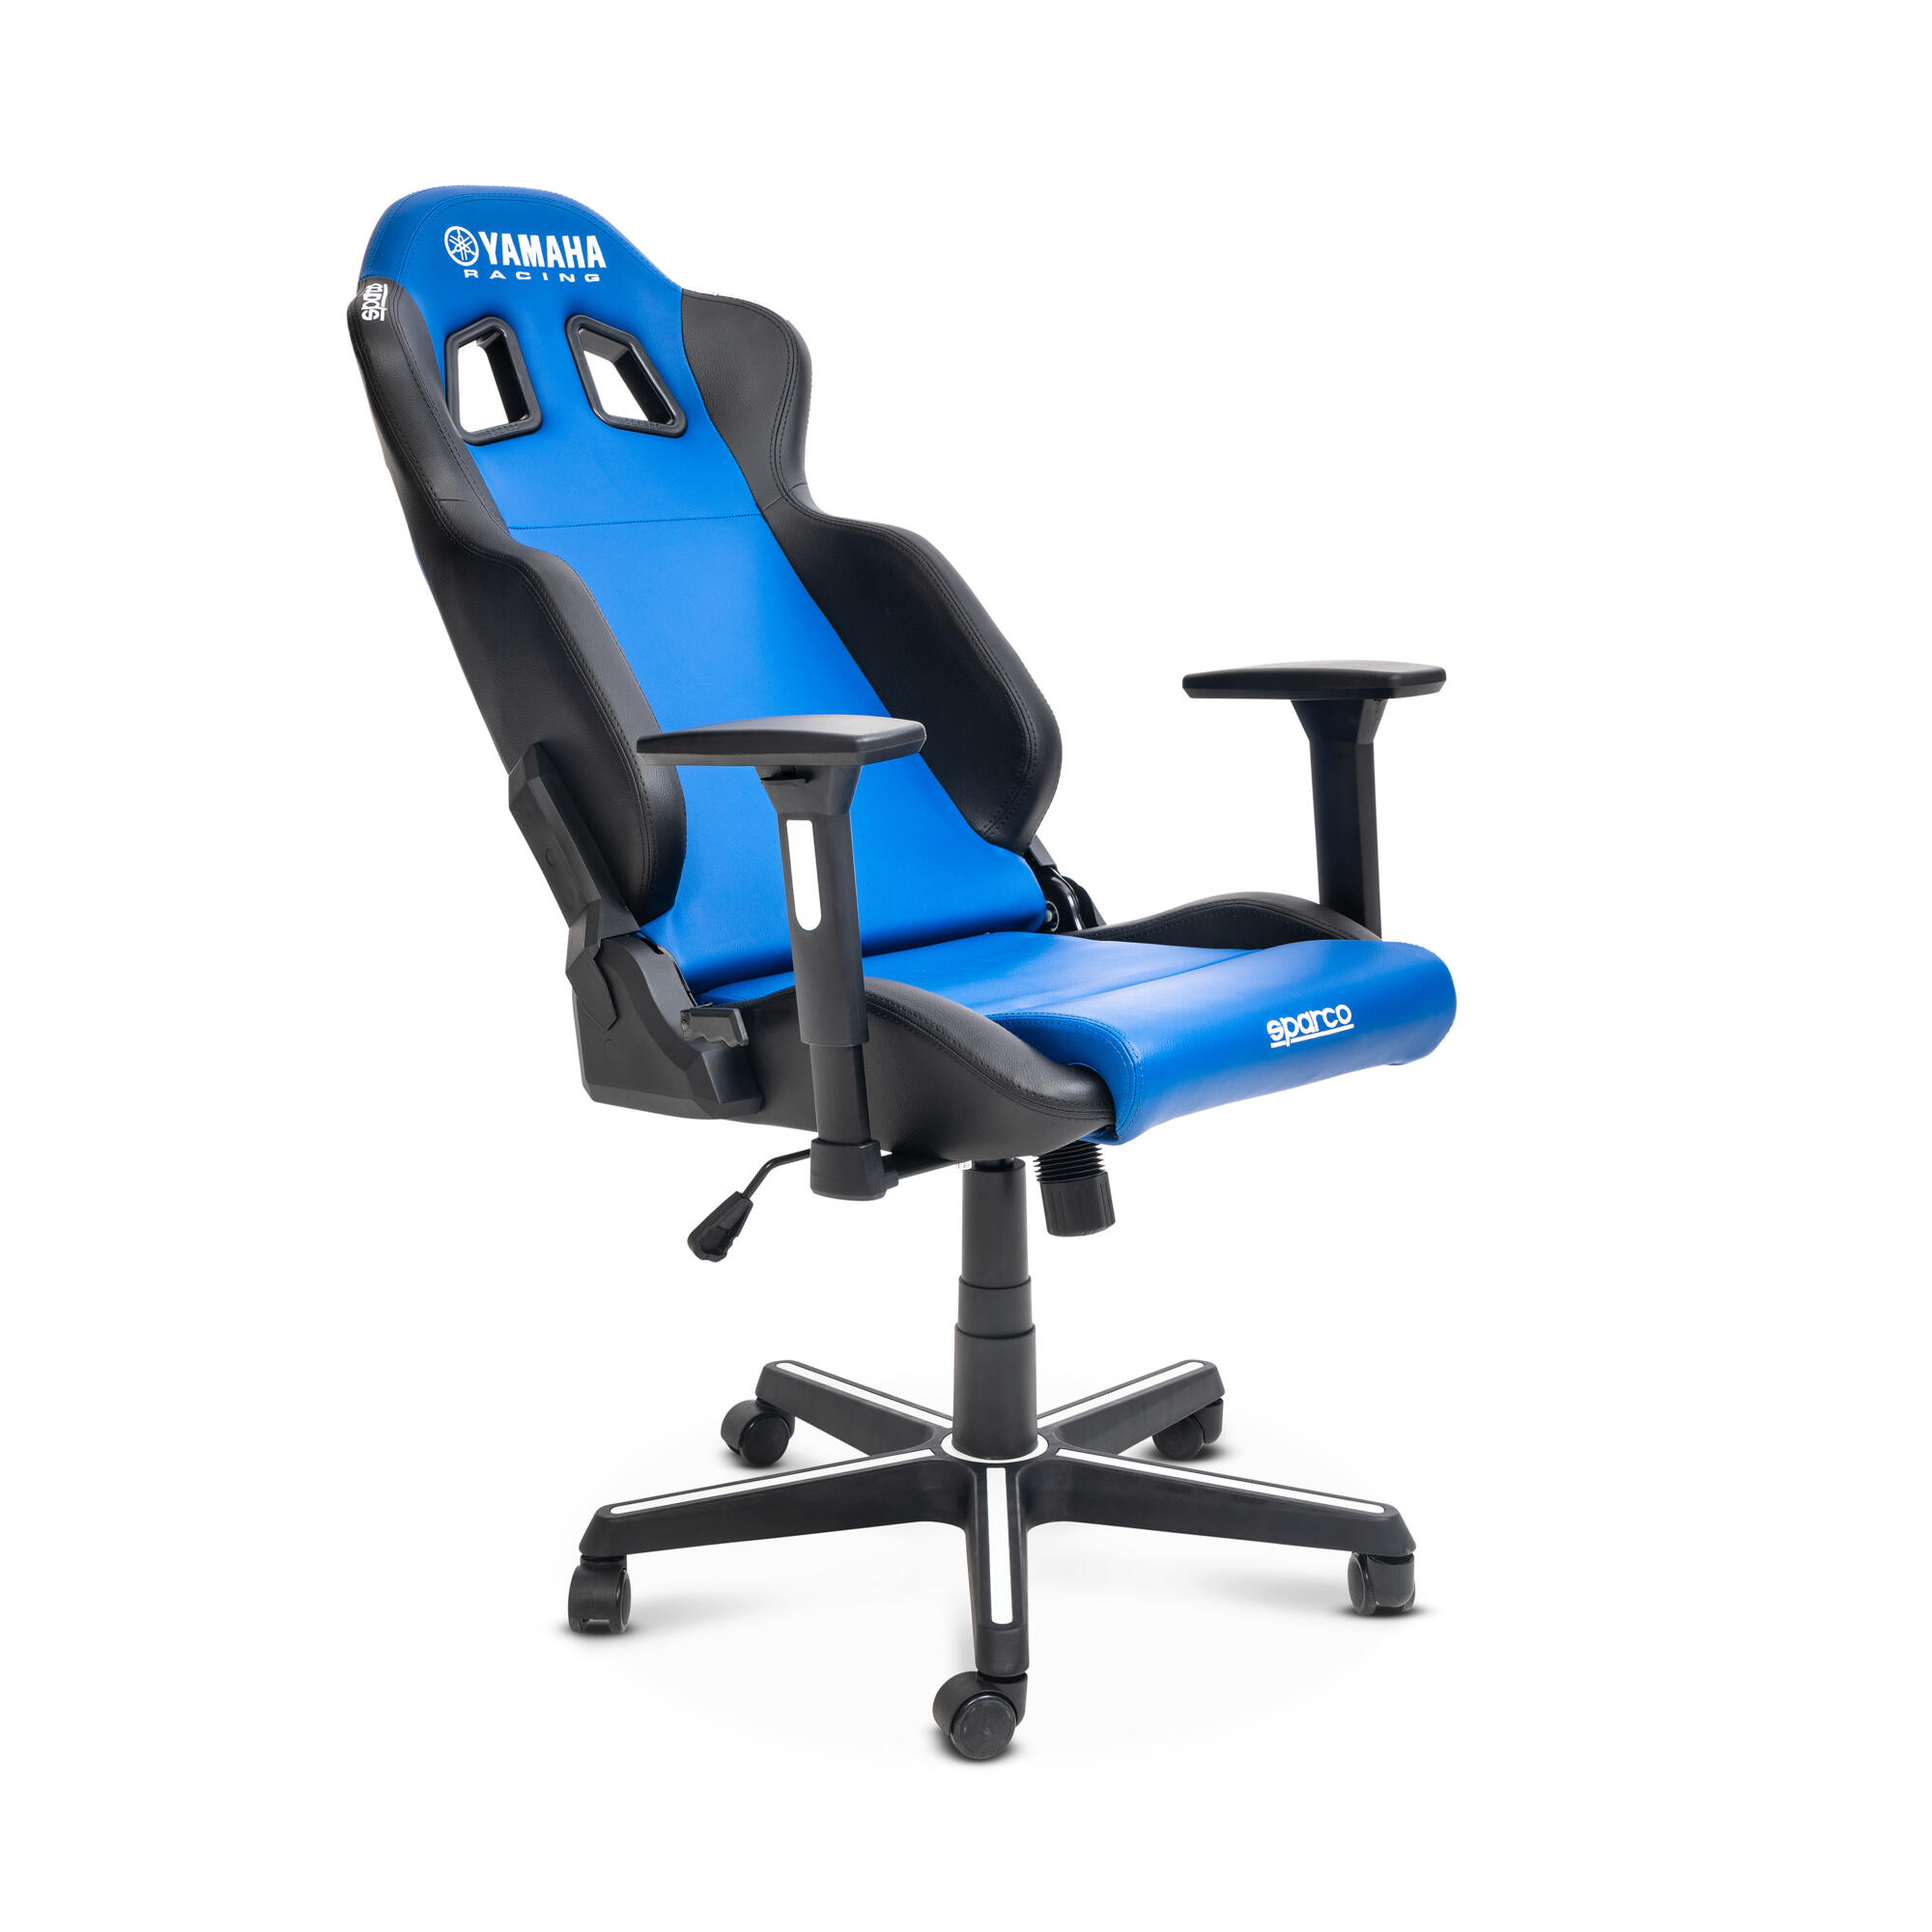 Sedia Gaming Office Chair - SIMONI RACING SIMONI RACING in vendita su Bep's